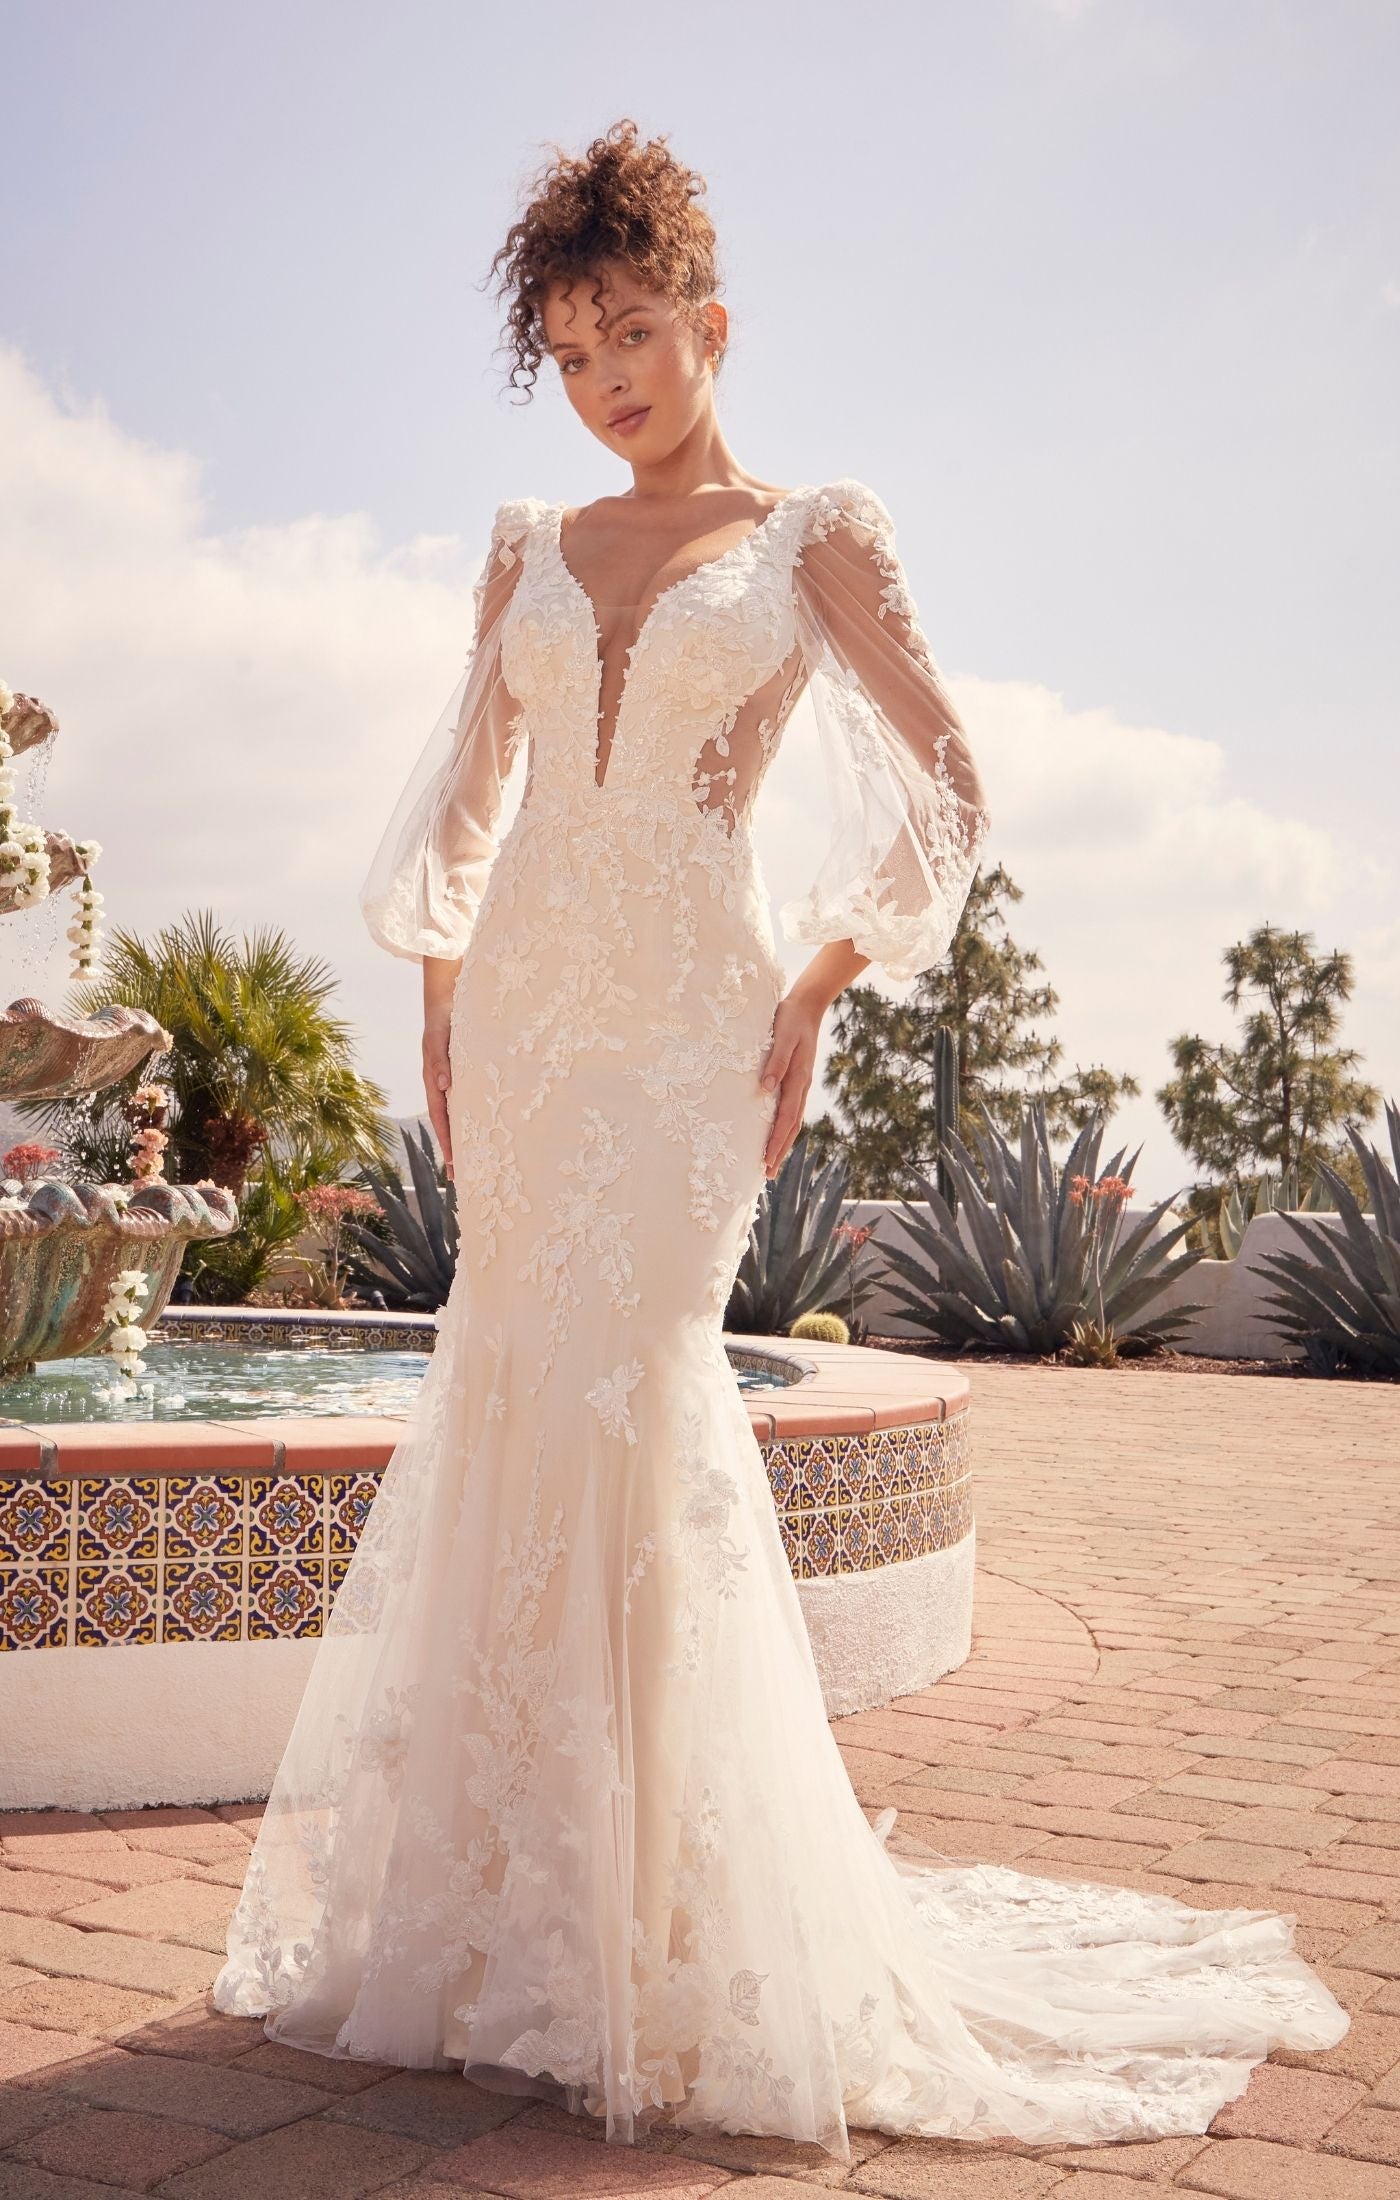 Pierlot | Open Back Lace Wedding Dress